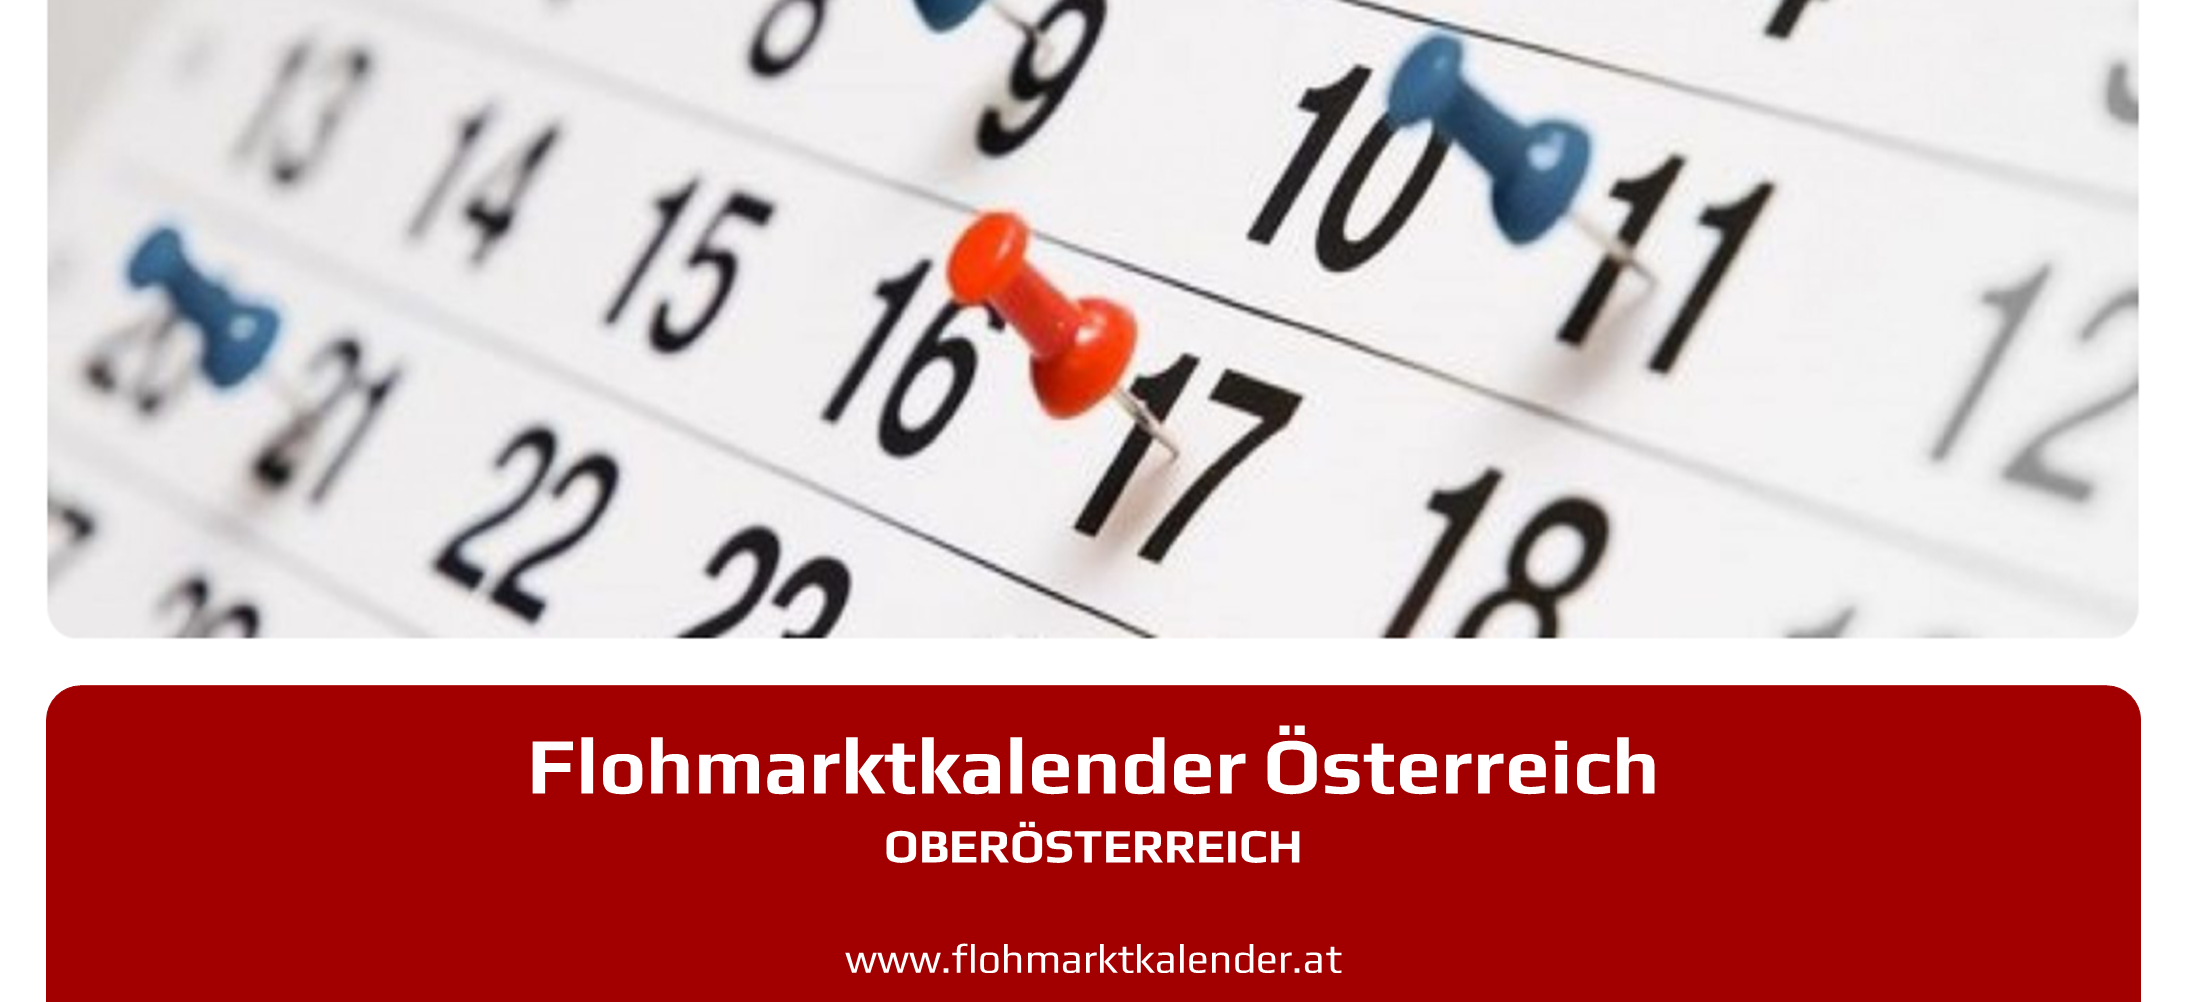 Flohmarktkalender Oberoesterreich 13